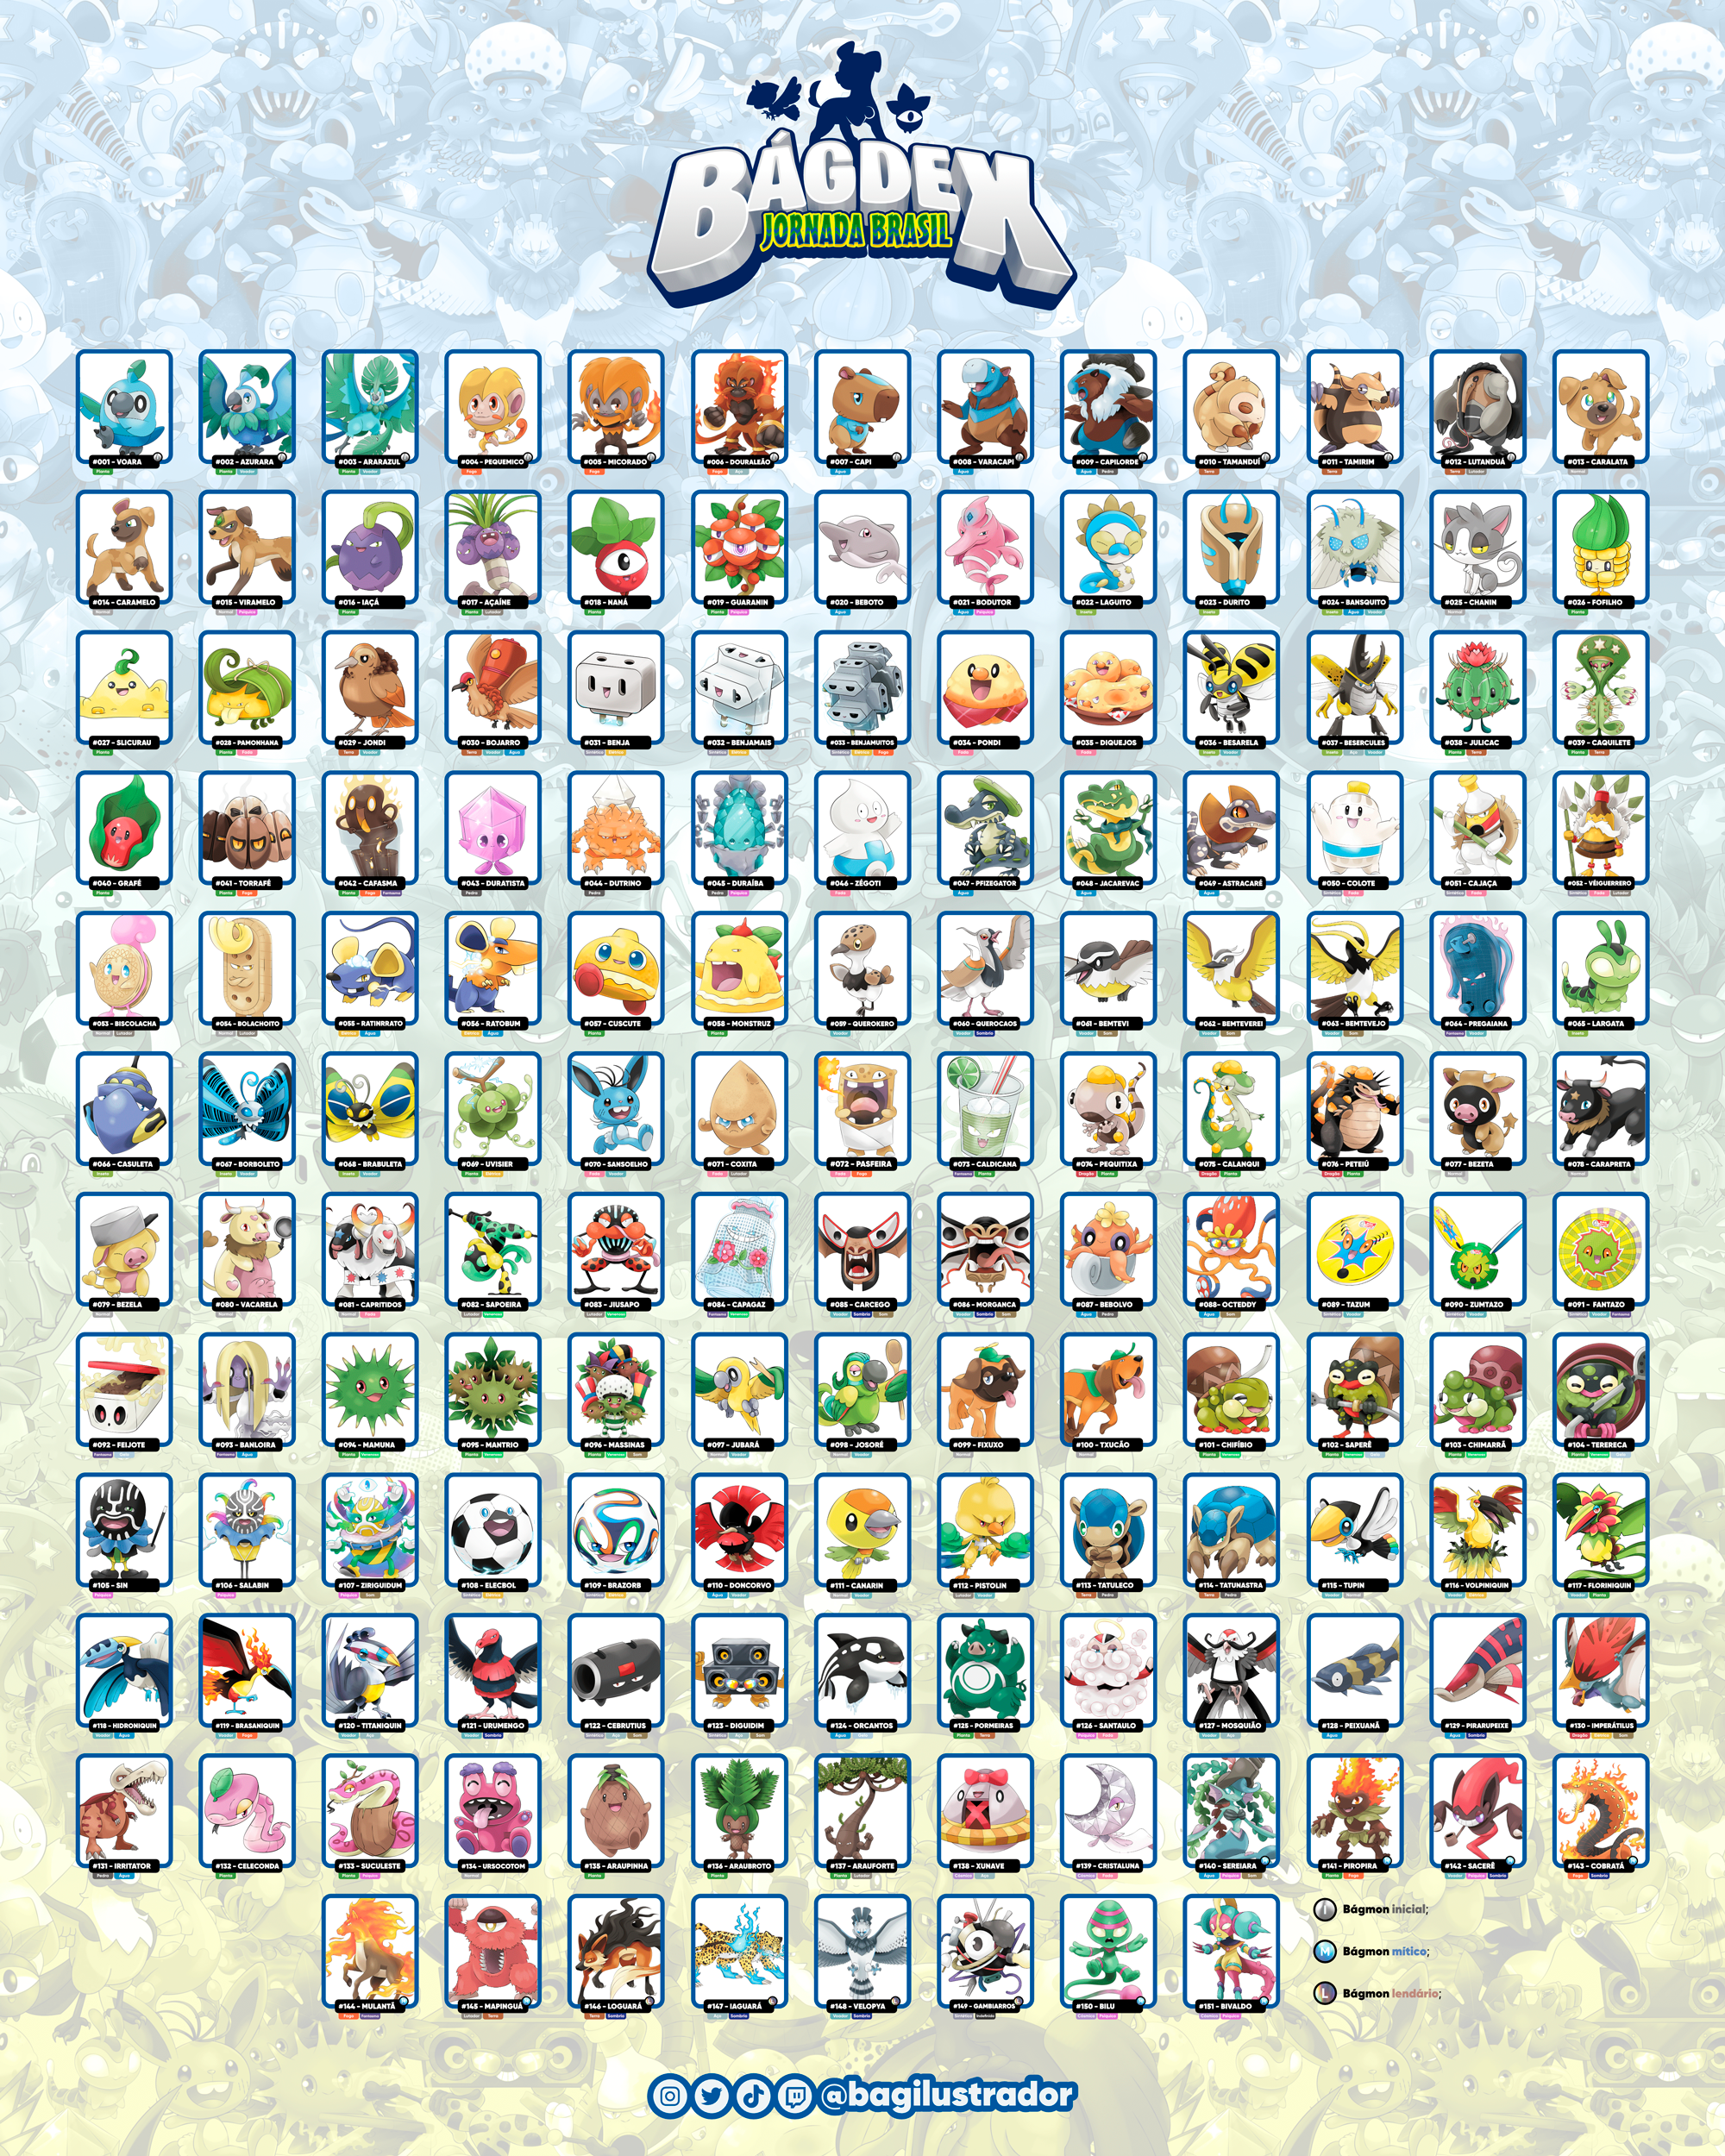 Ilustrador desenha 151 Pokémon e cria Pokédex inspirada na cultura